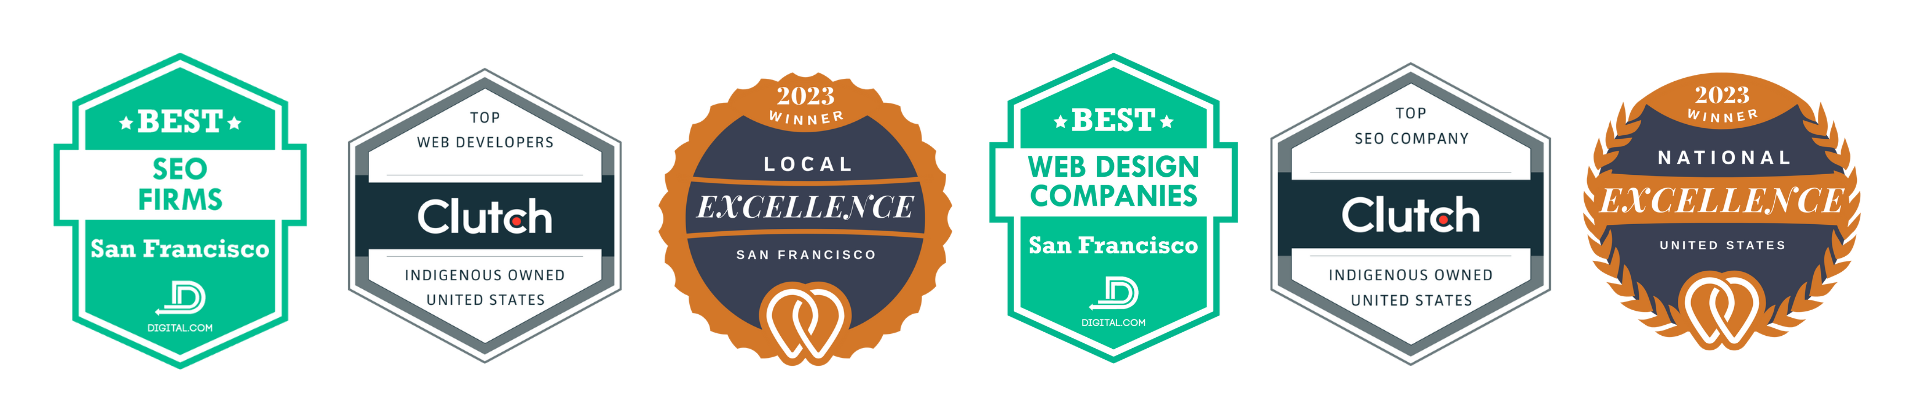 Website awards badges